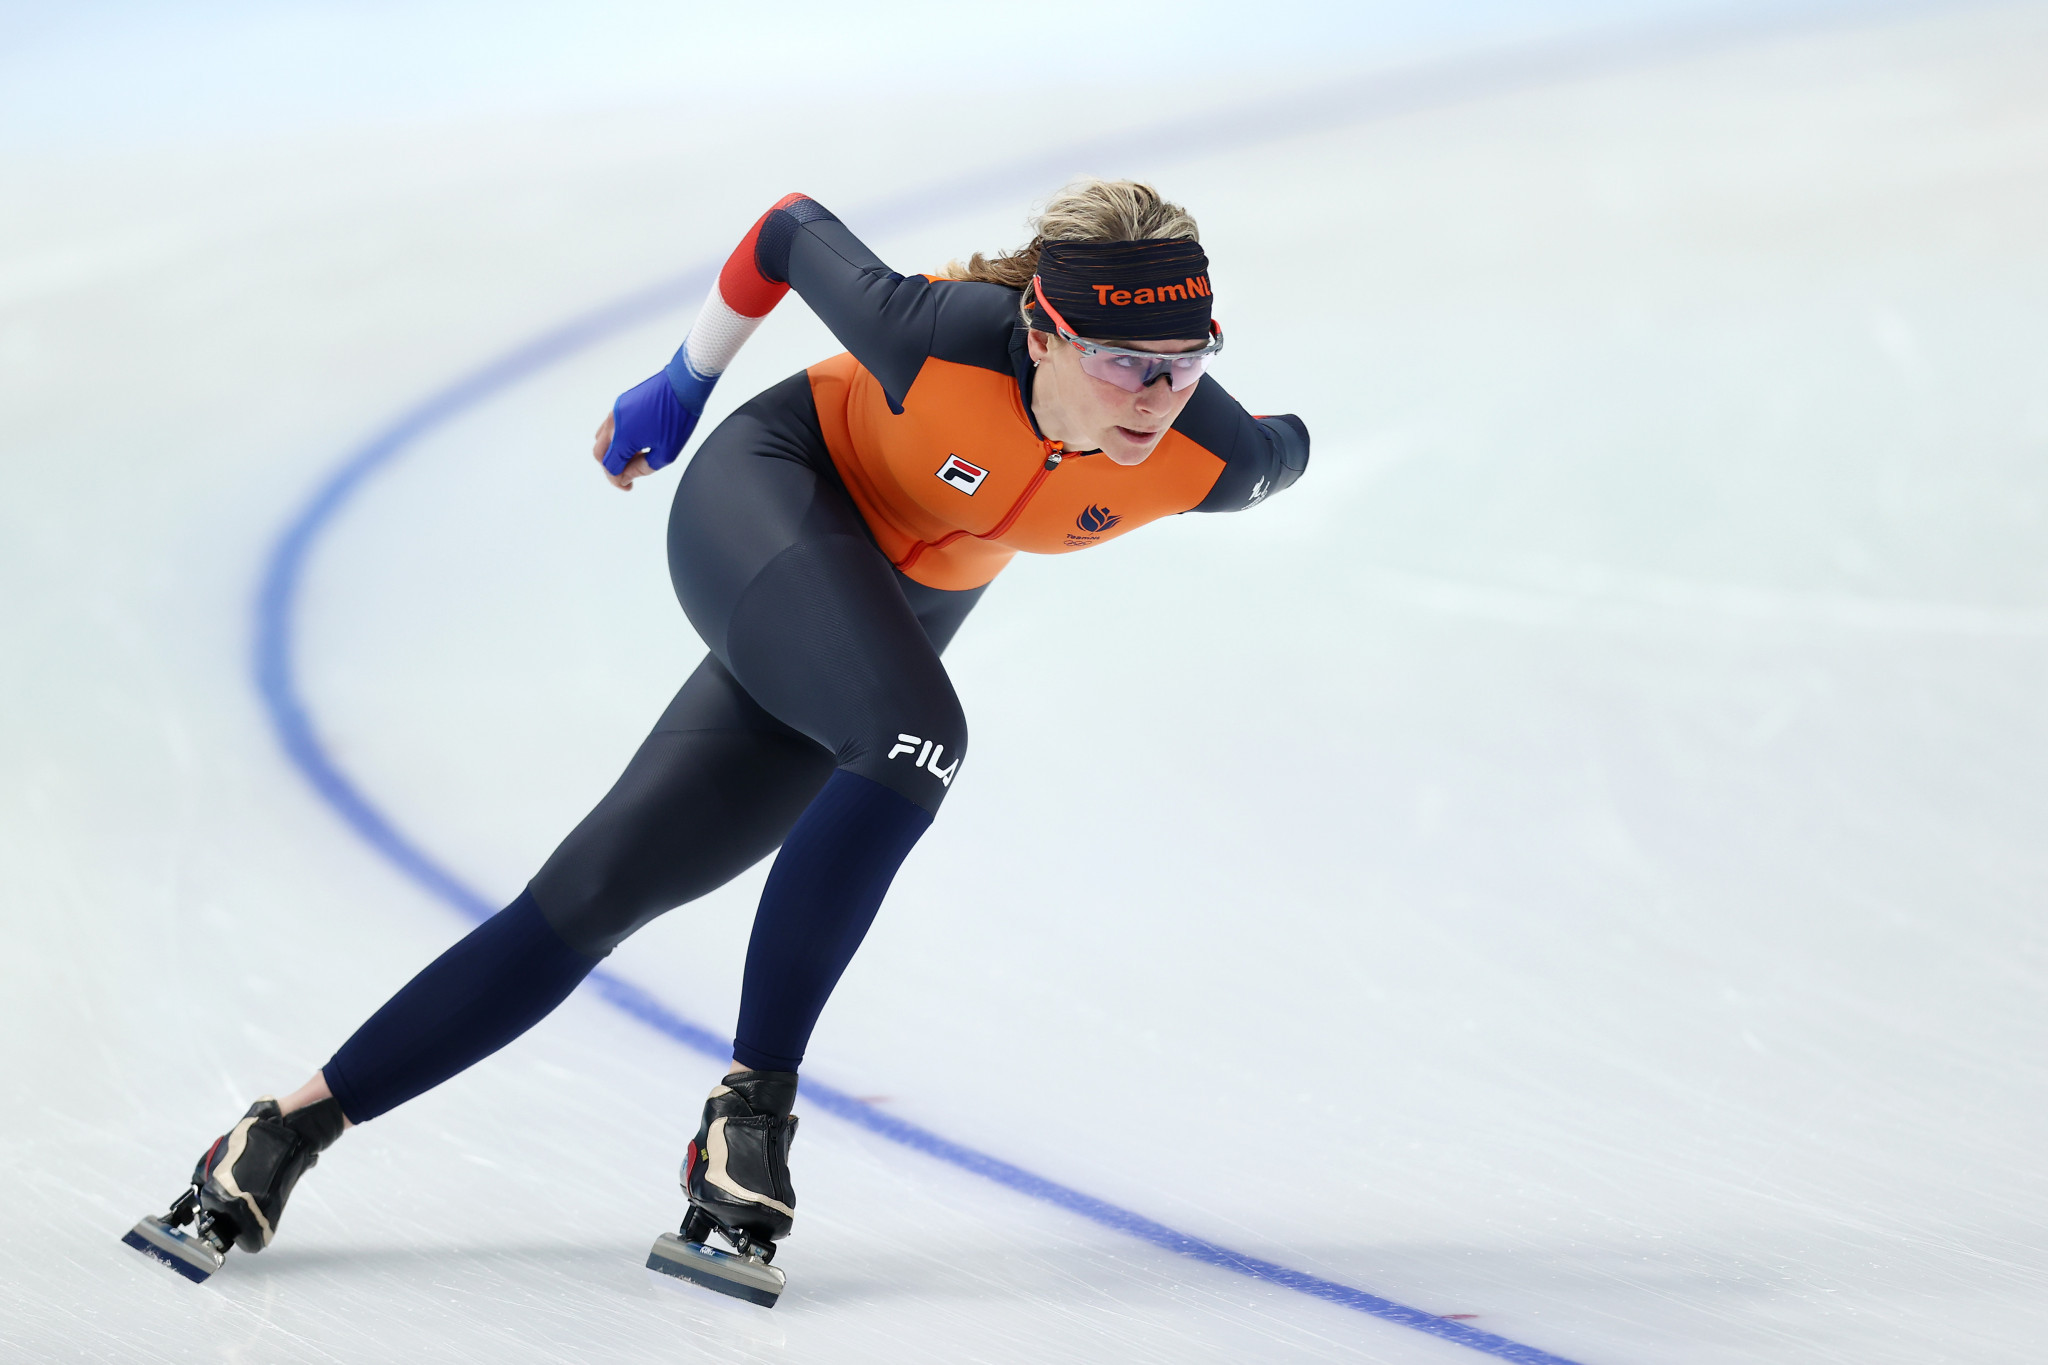 Televisie kijken voordeel Necklet Dutch team seeking Beijing 2022 speed skating domination at Ice Ribbon